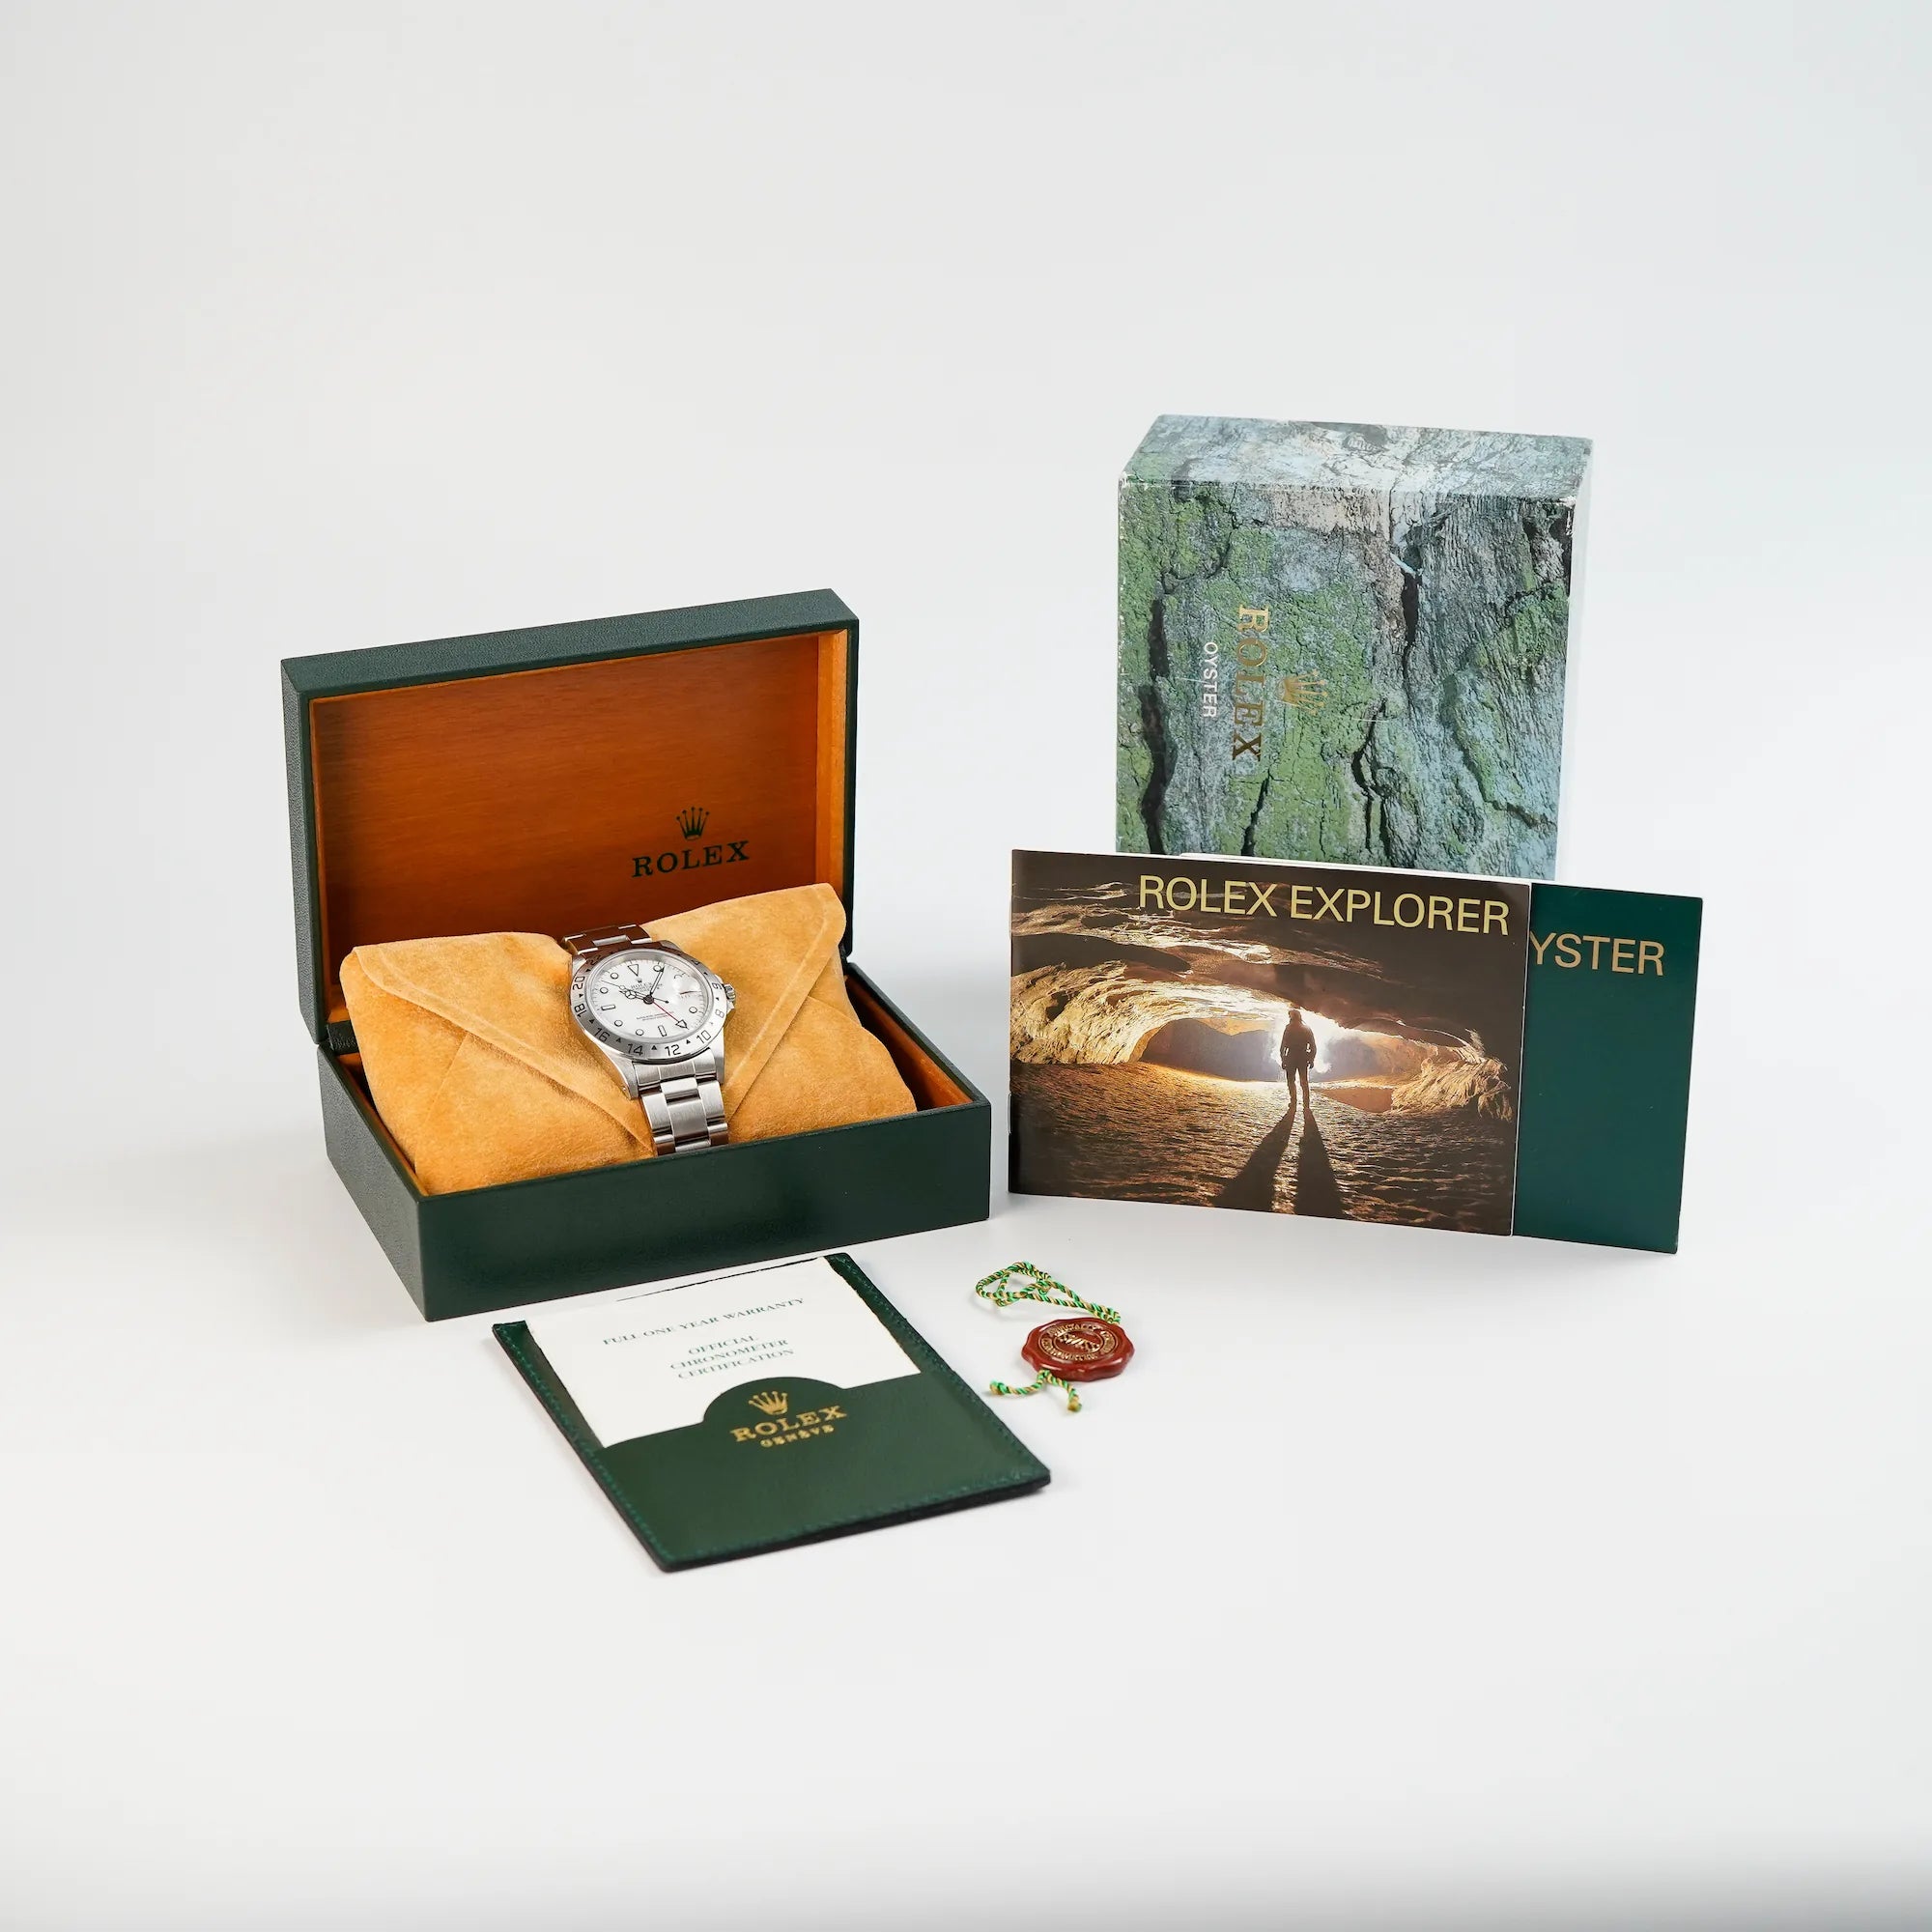 Rolex Explorer 2 mit einem weißen "Swiss-Only"-Zifferblatt zusammen mit dem Lieferumfang, bestehend aus Box, Papieren, Hangtag und Booklets